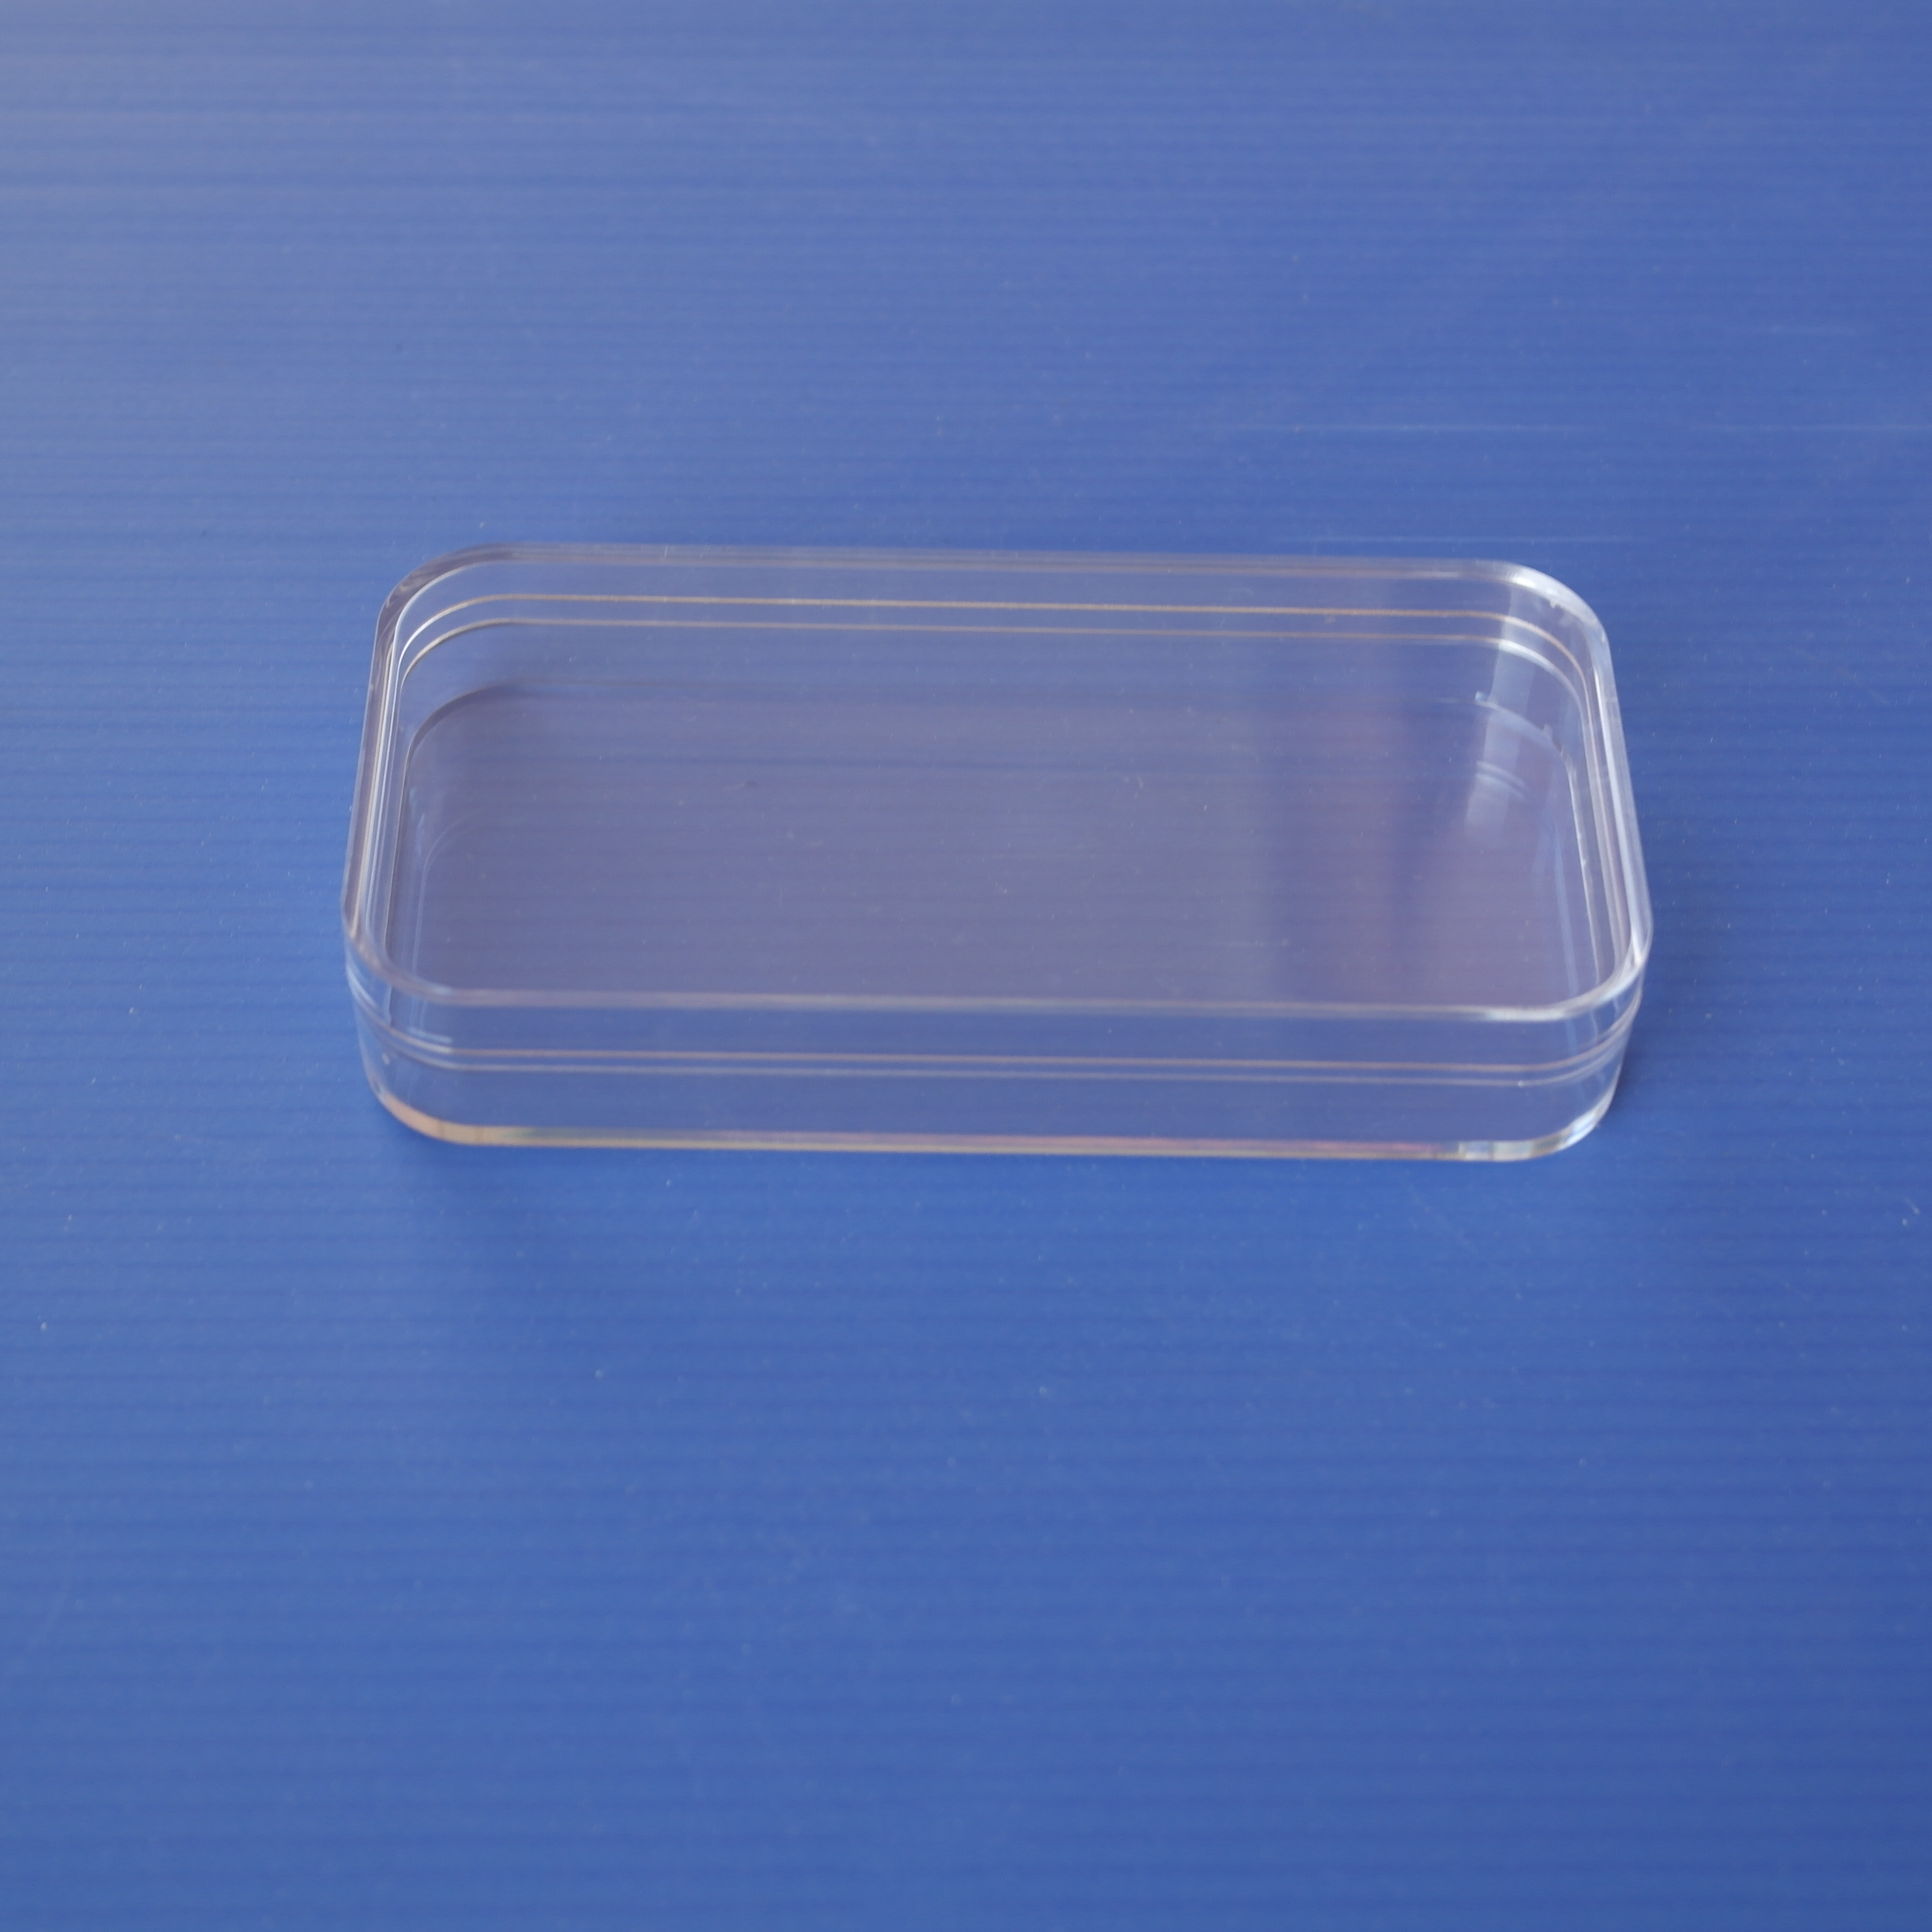 电子烟水晶盒厂家批发 透明塑胶盒厂家直销图片